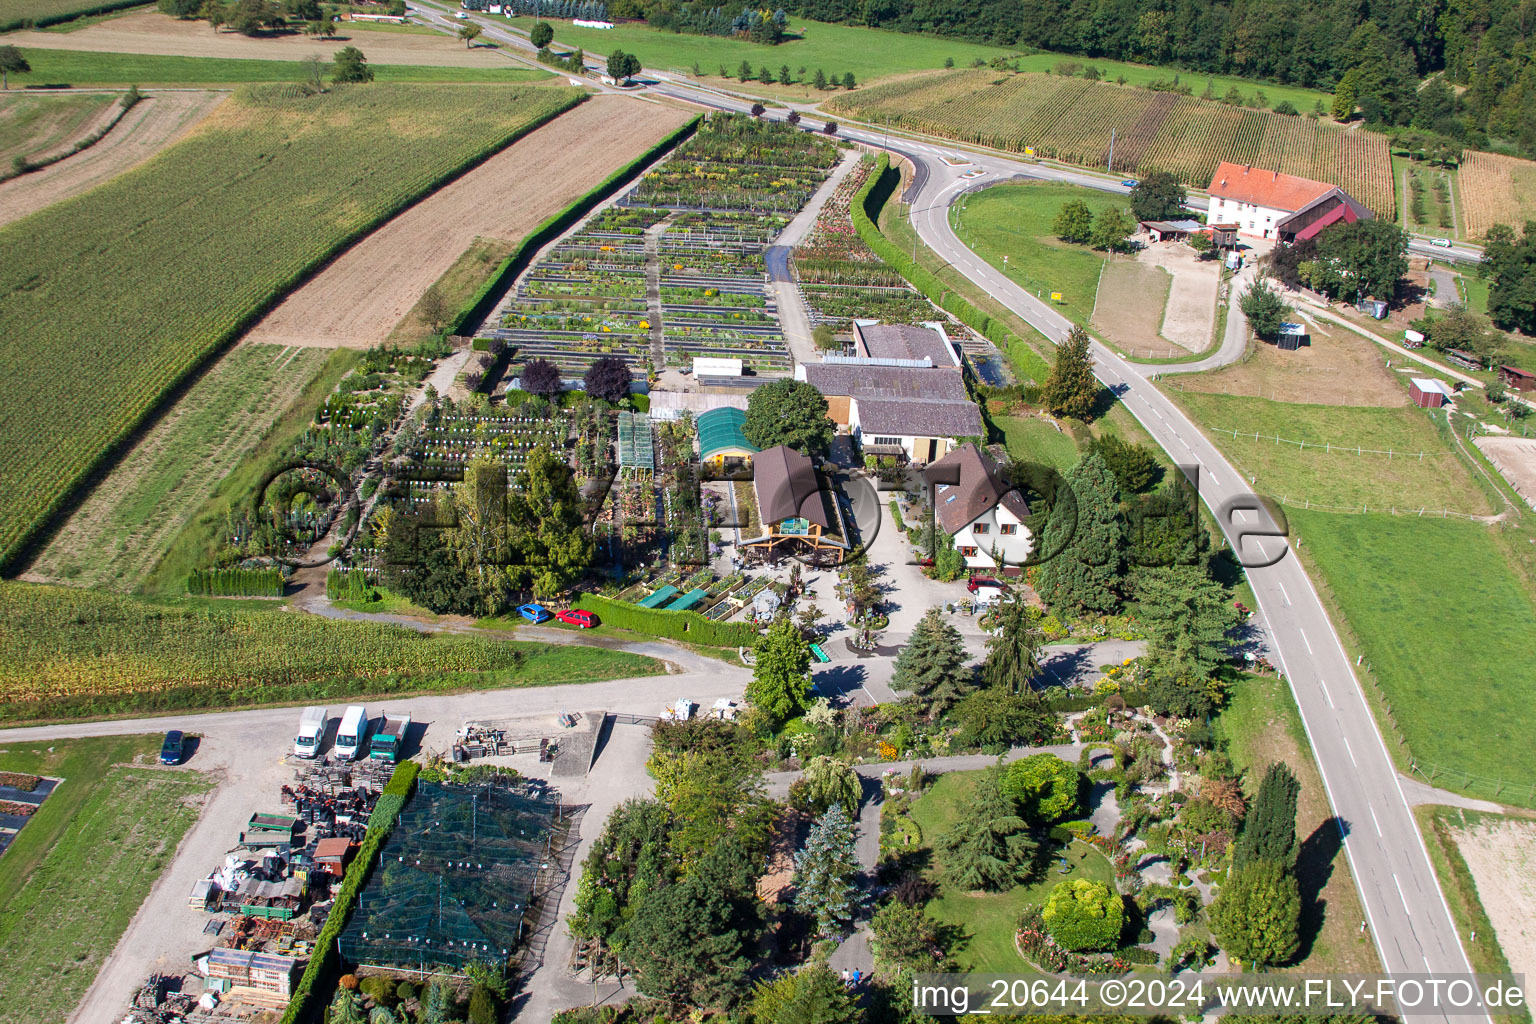 Vue aérienne de Zones de toit en verre dans les rangées de serres pour faire pousser des fleurs de Garden Times Black à le quartier Bodersweier in Kehl dans le département Bade-Wurtemberg, Allemagne